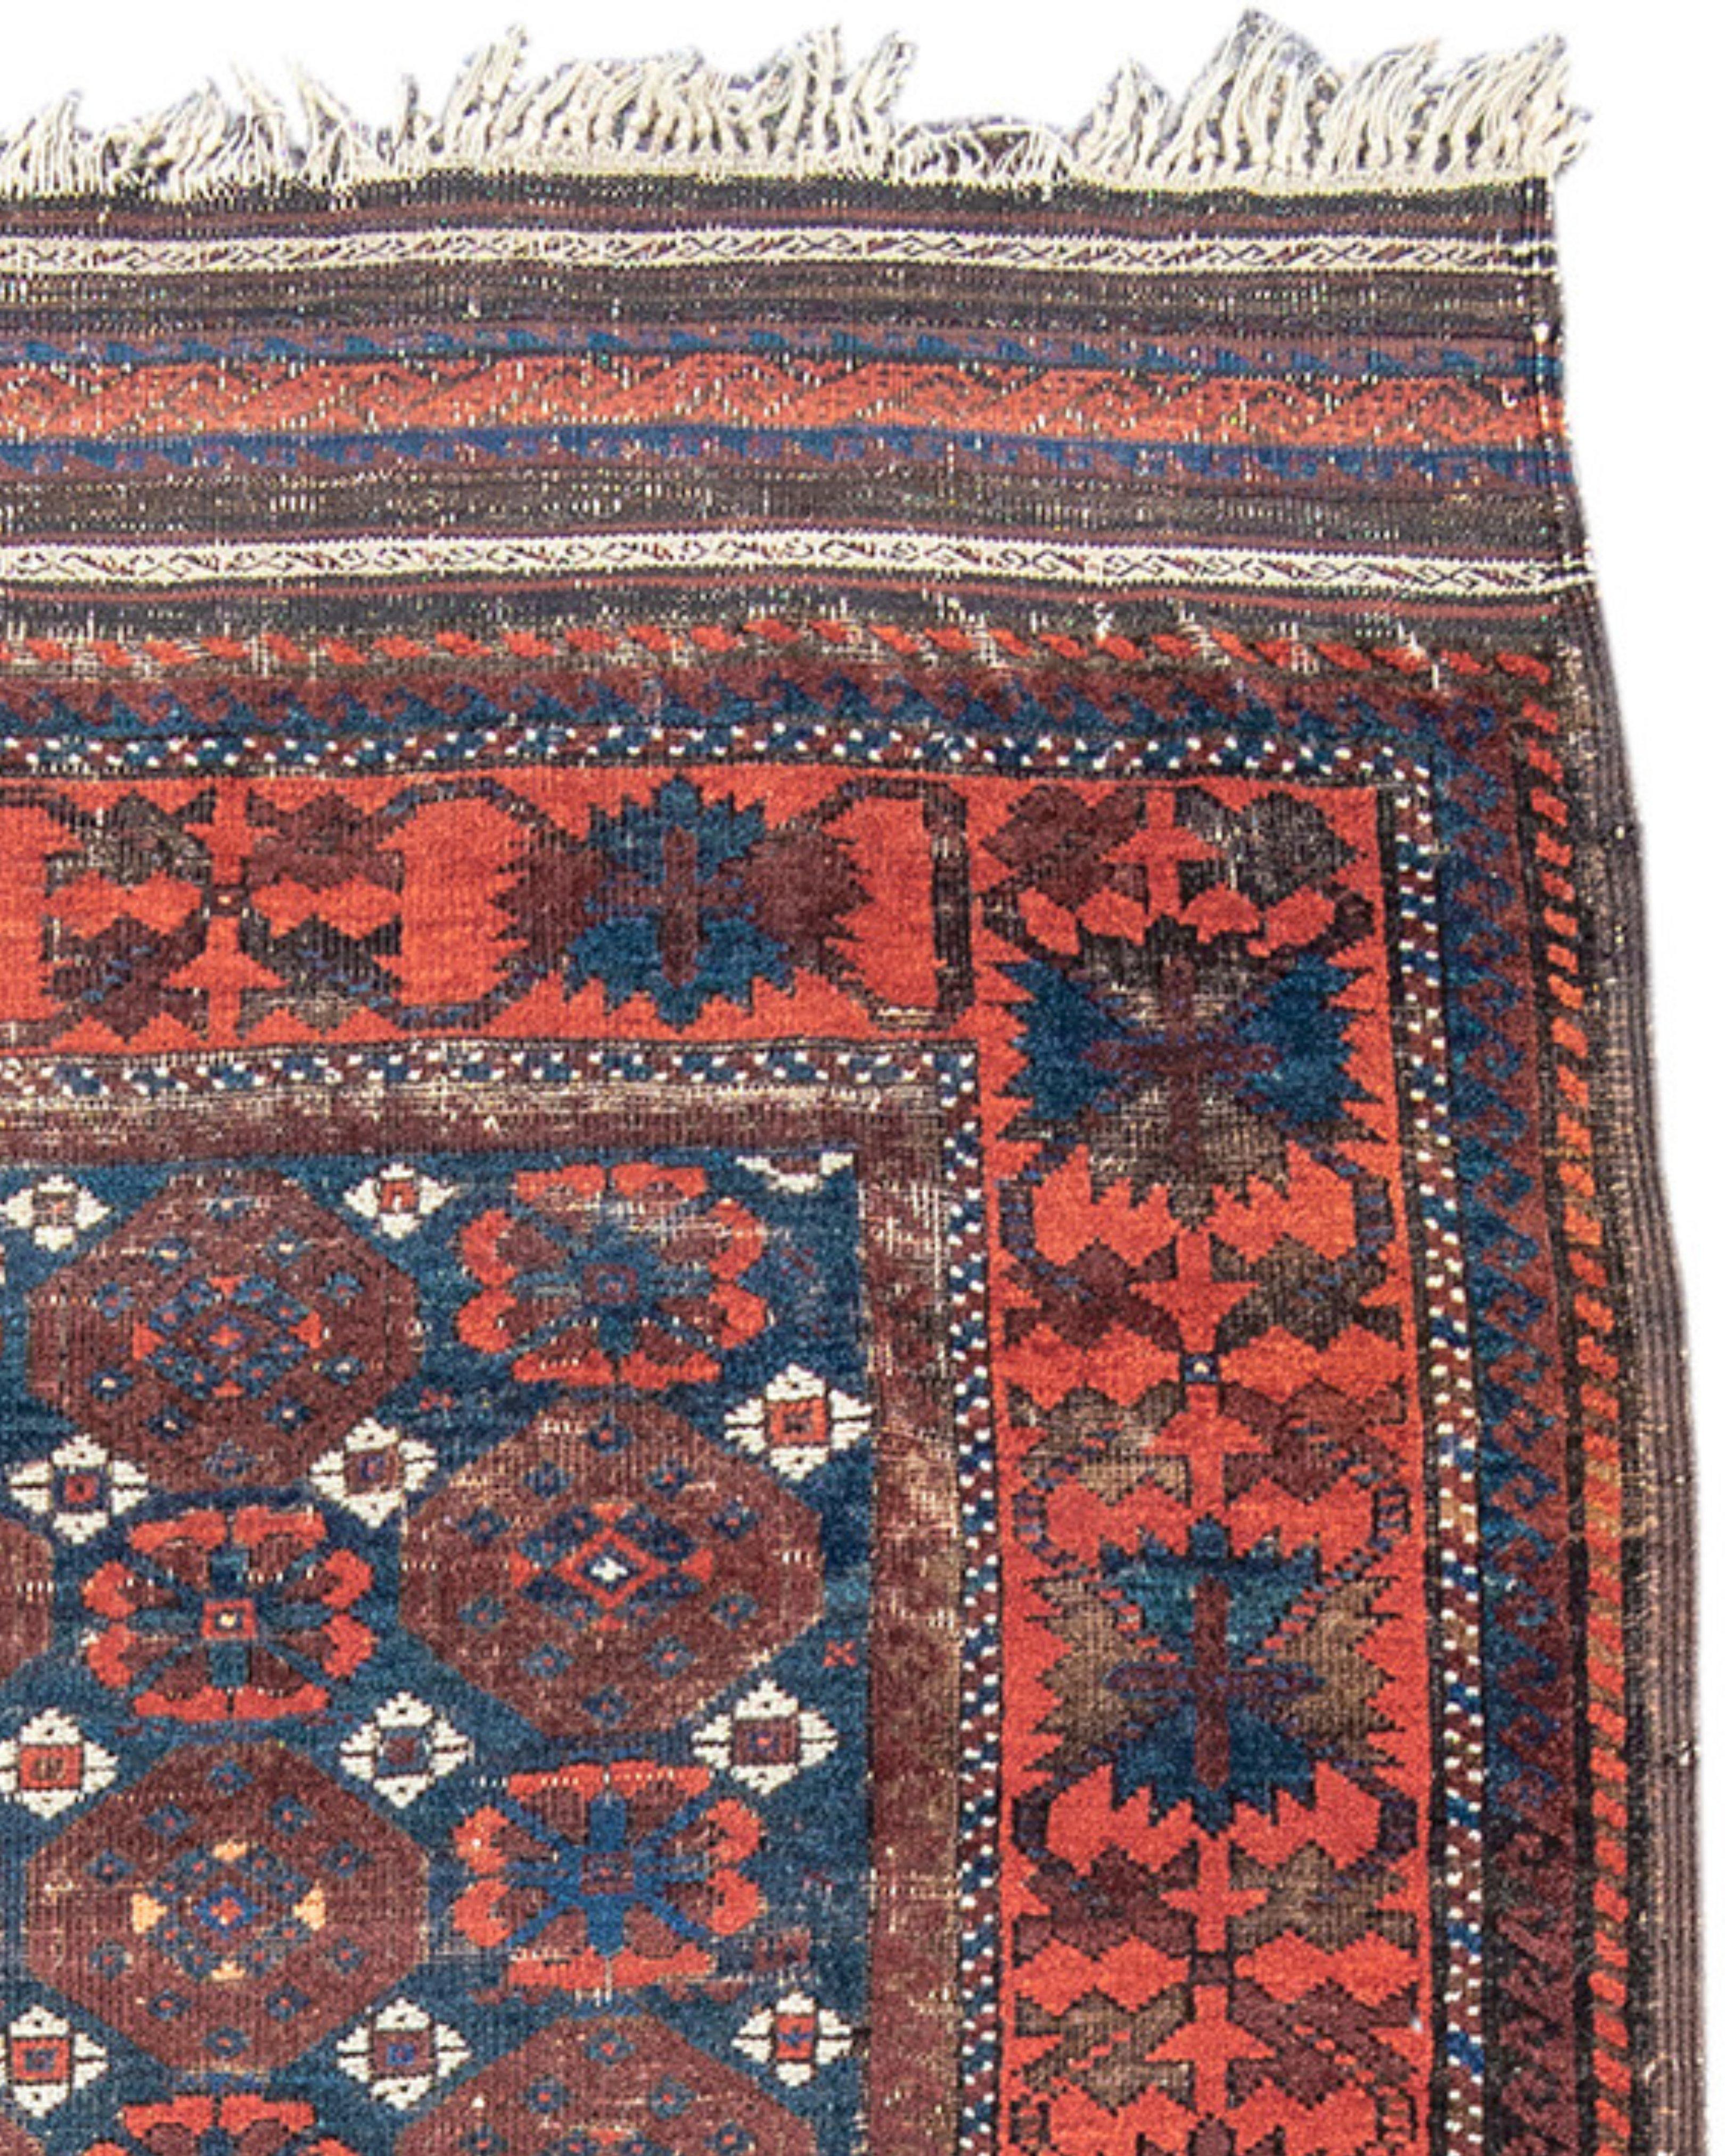 Antiker persischer Baluch-Teppich, spätes 19. Jahrhundert

Dieser Teppich mit klassischem Design stammt aus dem Nordosten des Iran. Das als 